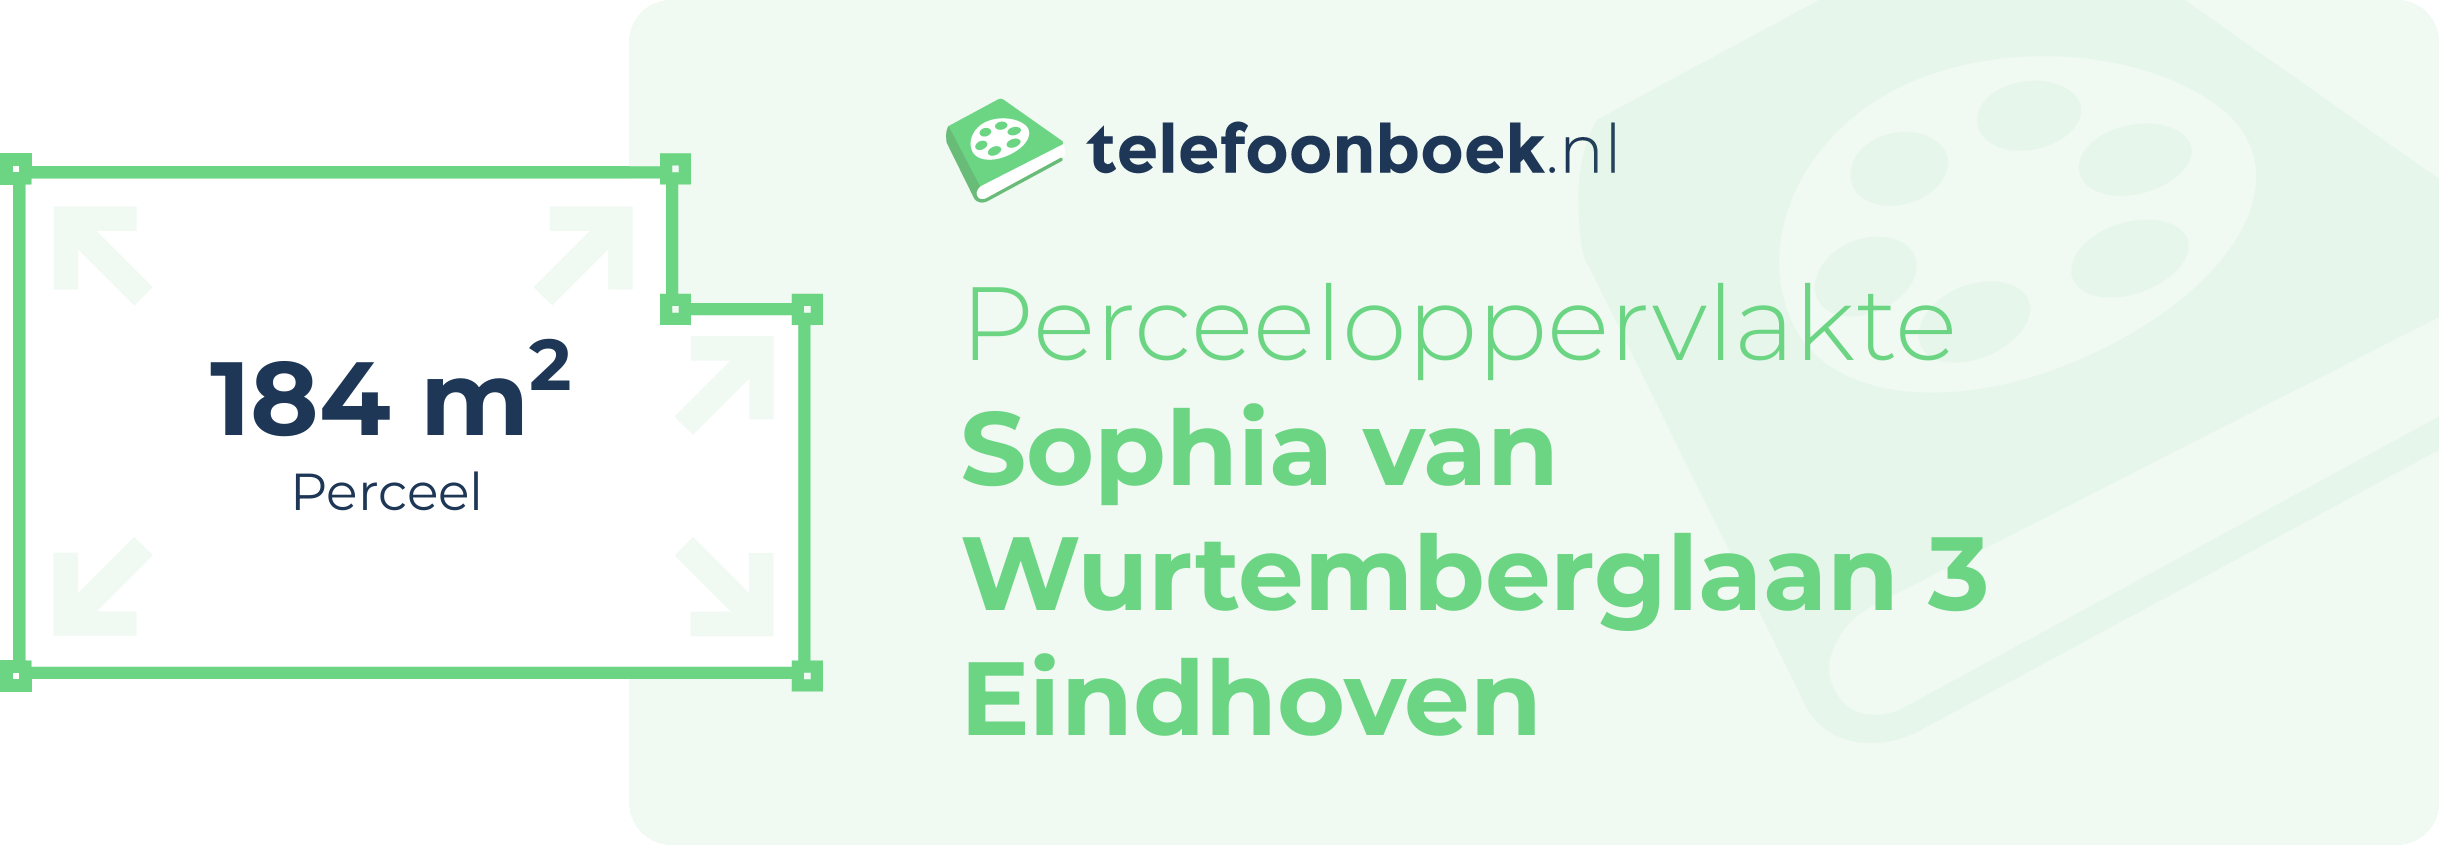 Perceeloppervlakte Sophia Van Wurtemberglaan 3 Eindhoven